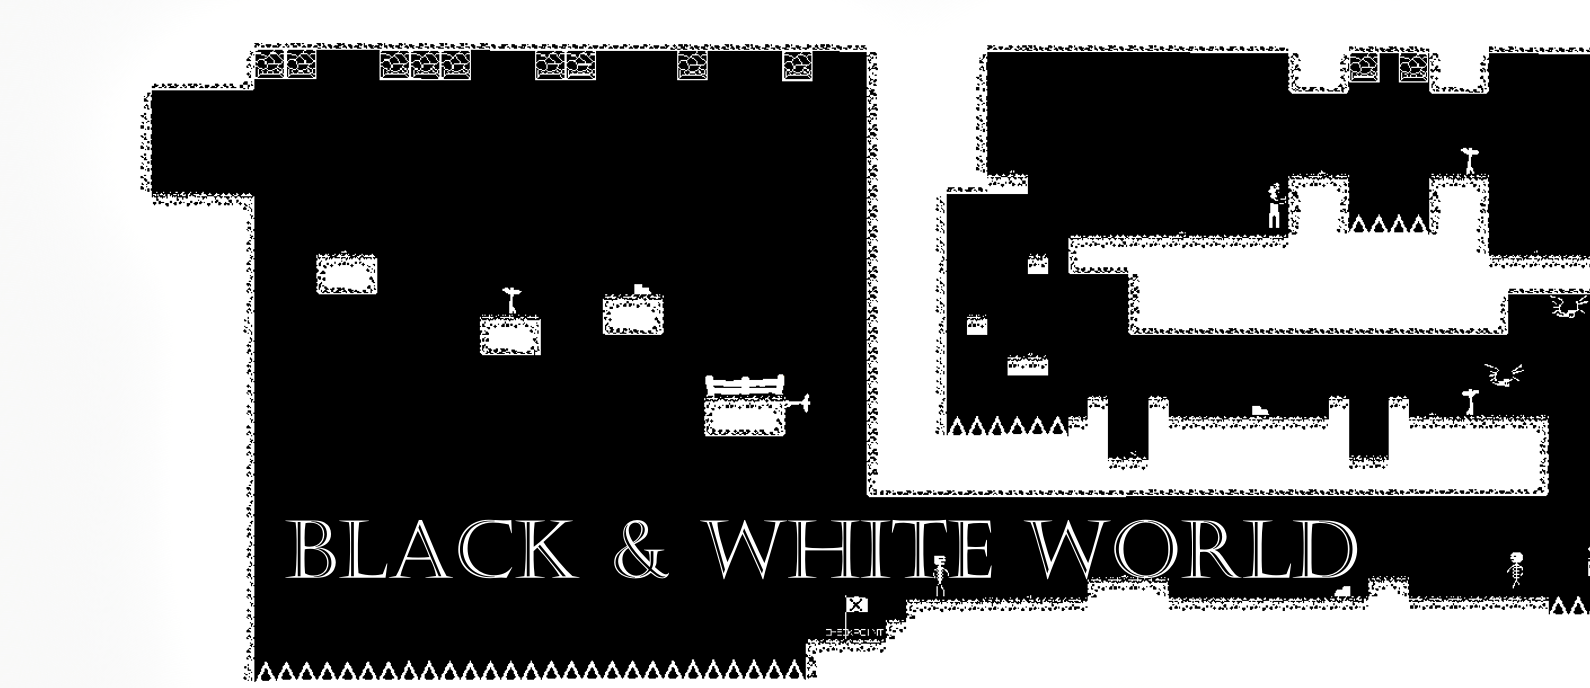 Black & White World